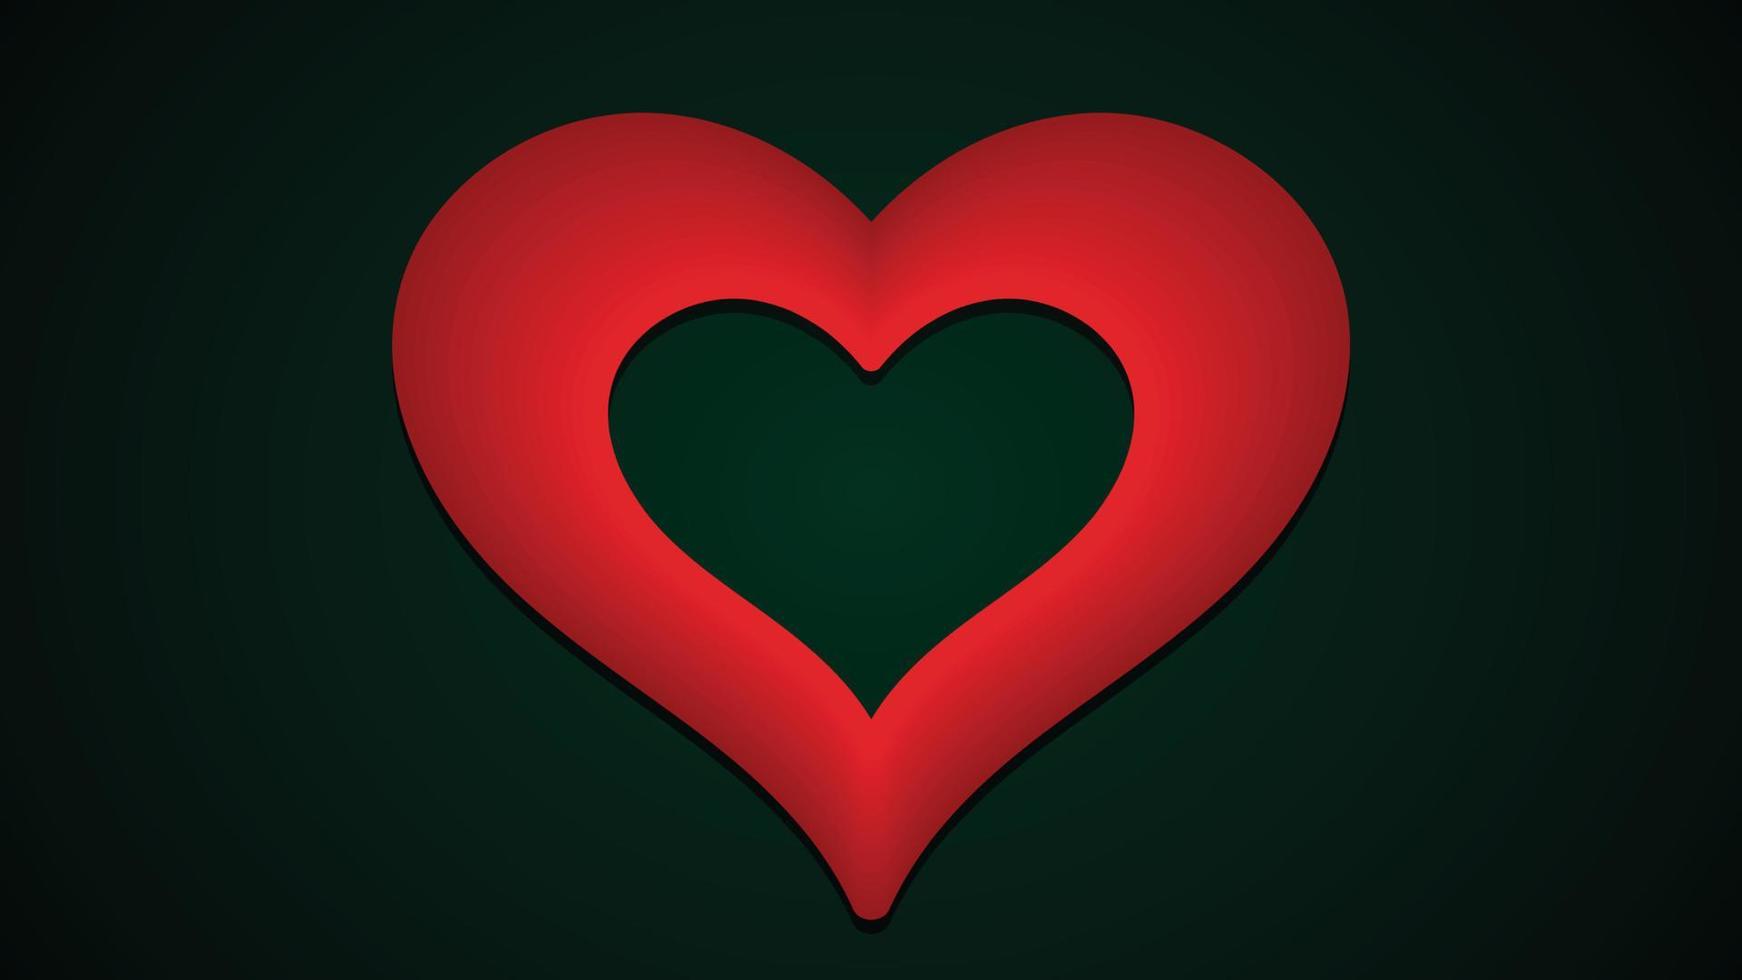 mörkgrön bakgrund med kärlekssymbol unik hjärtform vektor